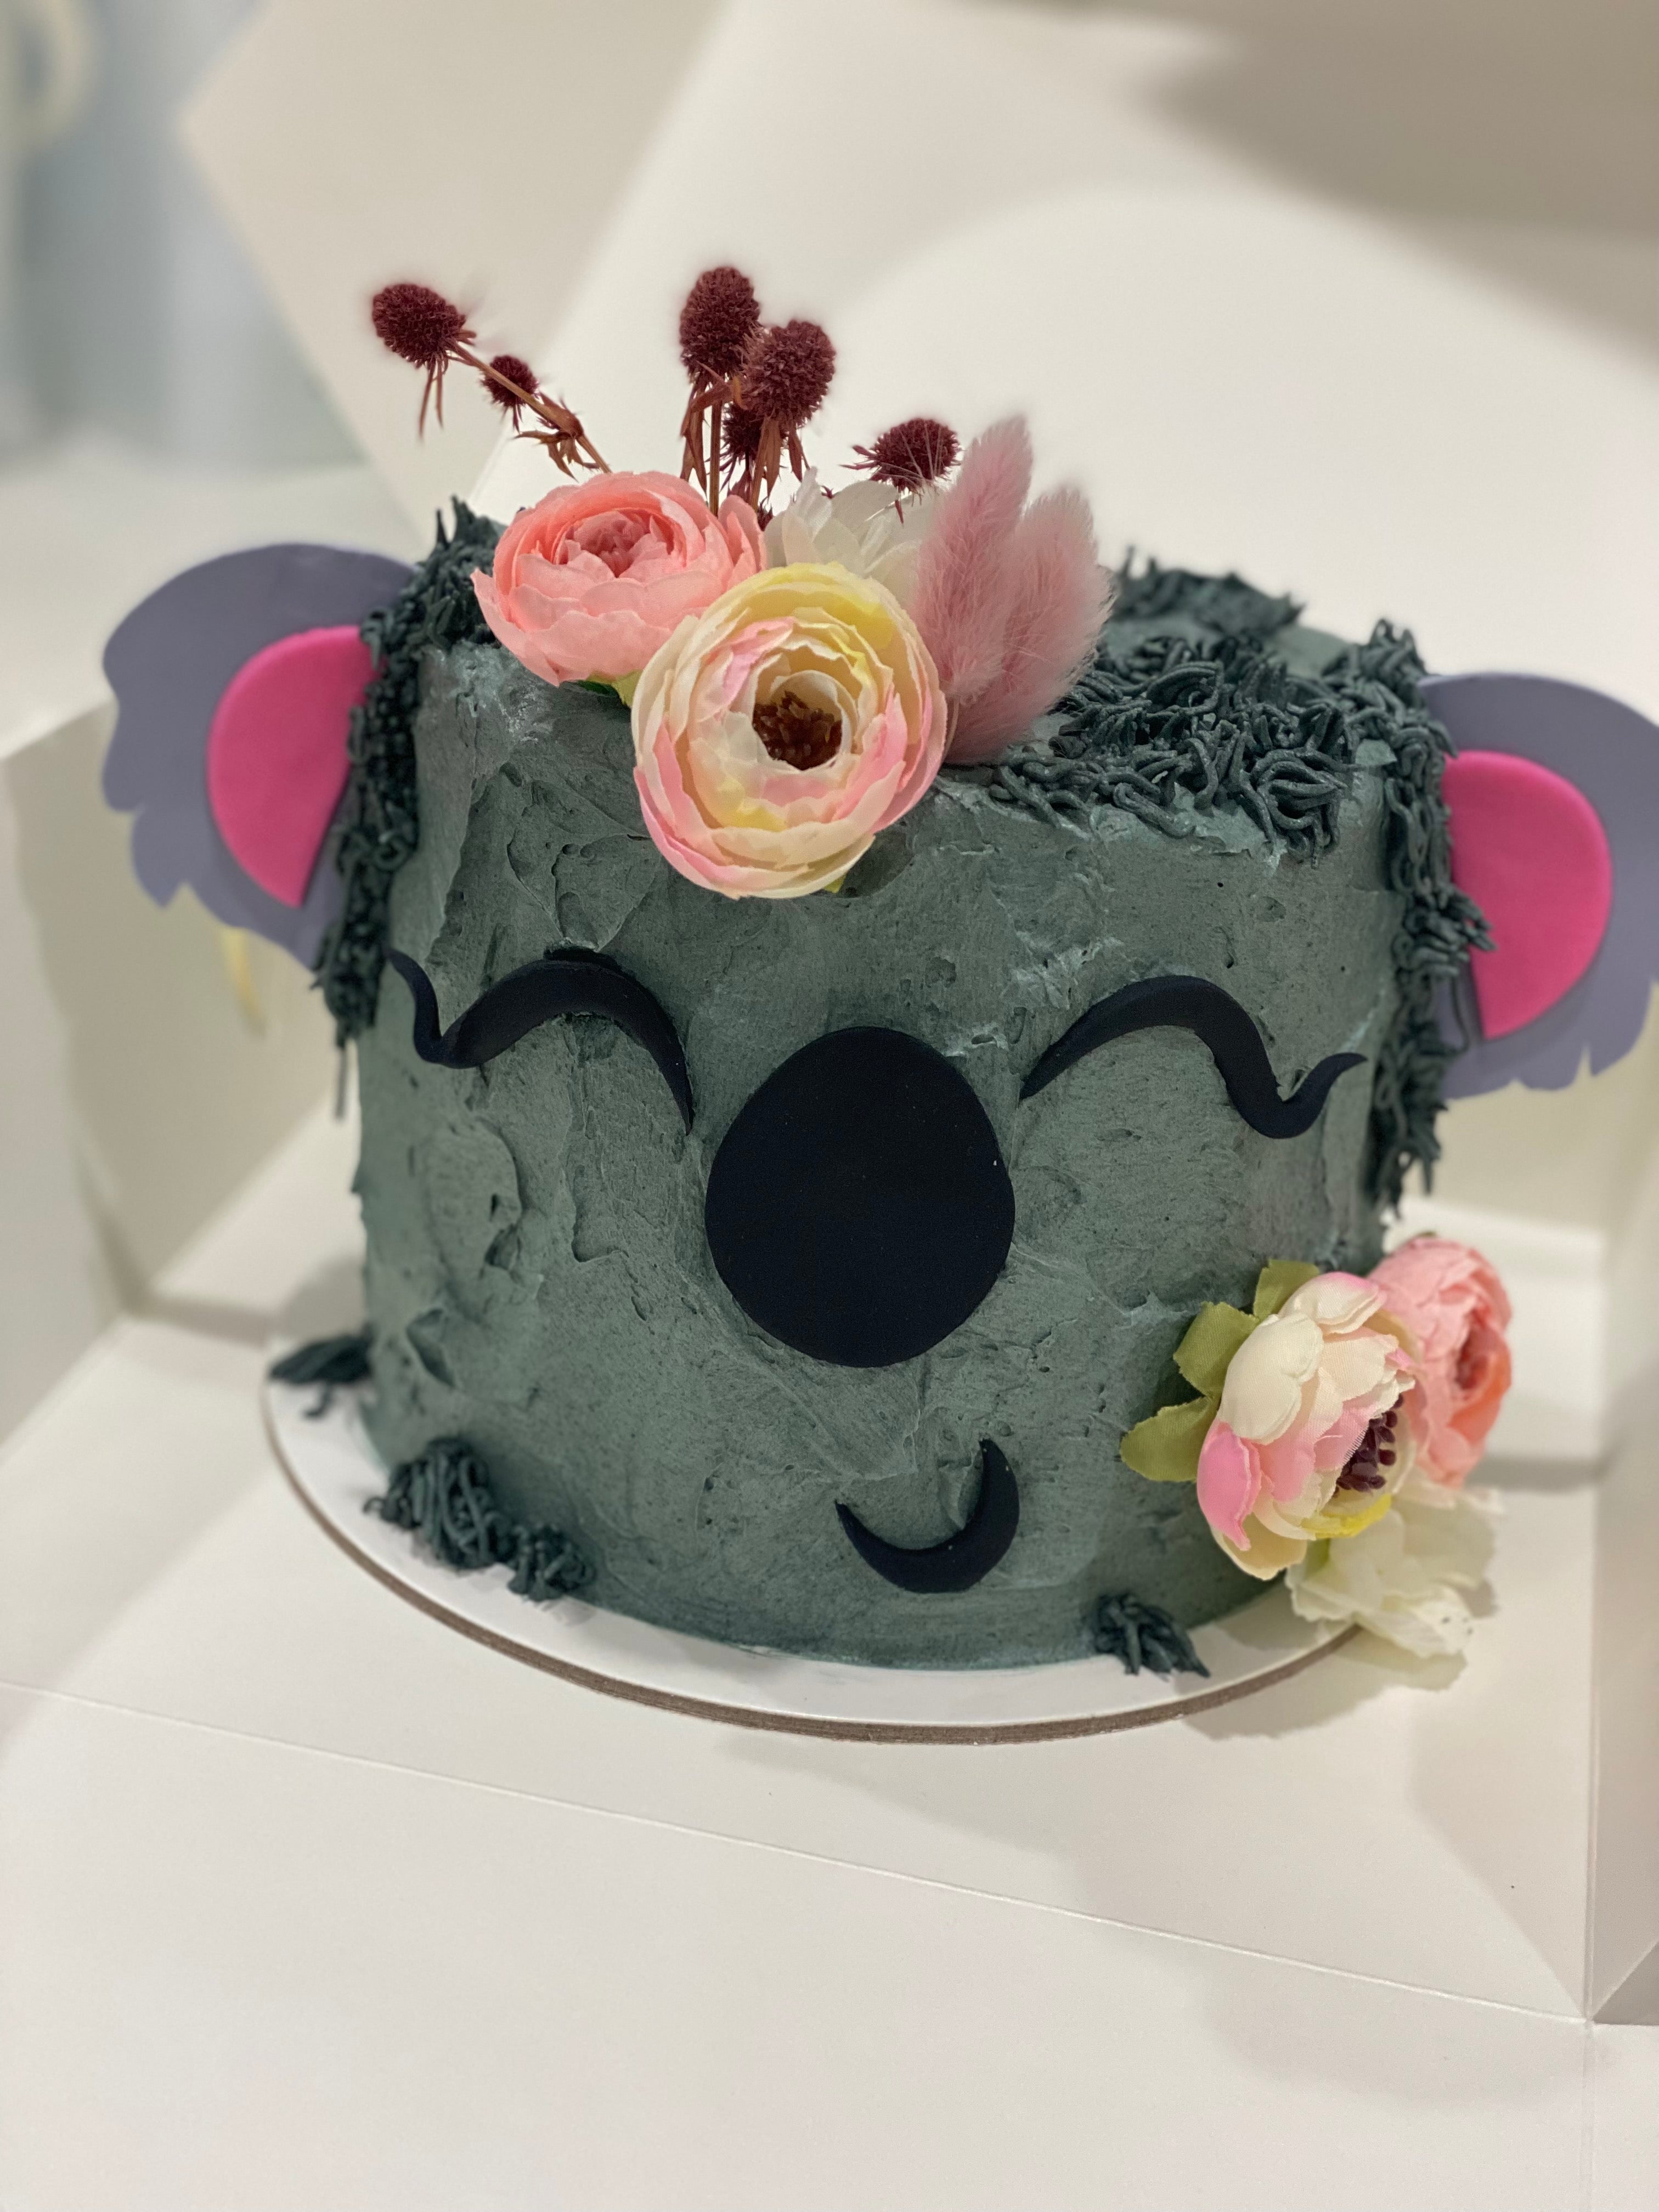 6" Koala 🐨 cake